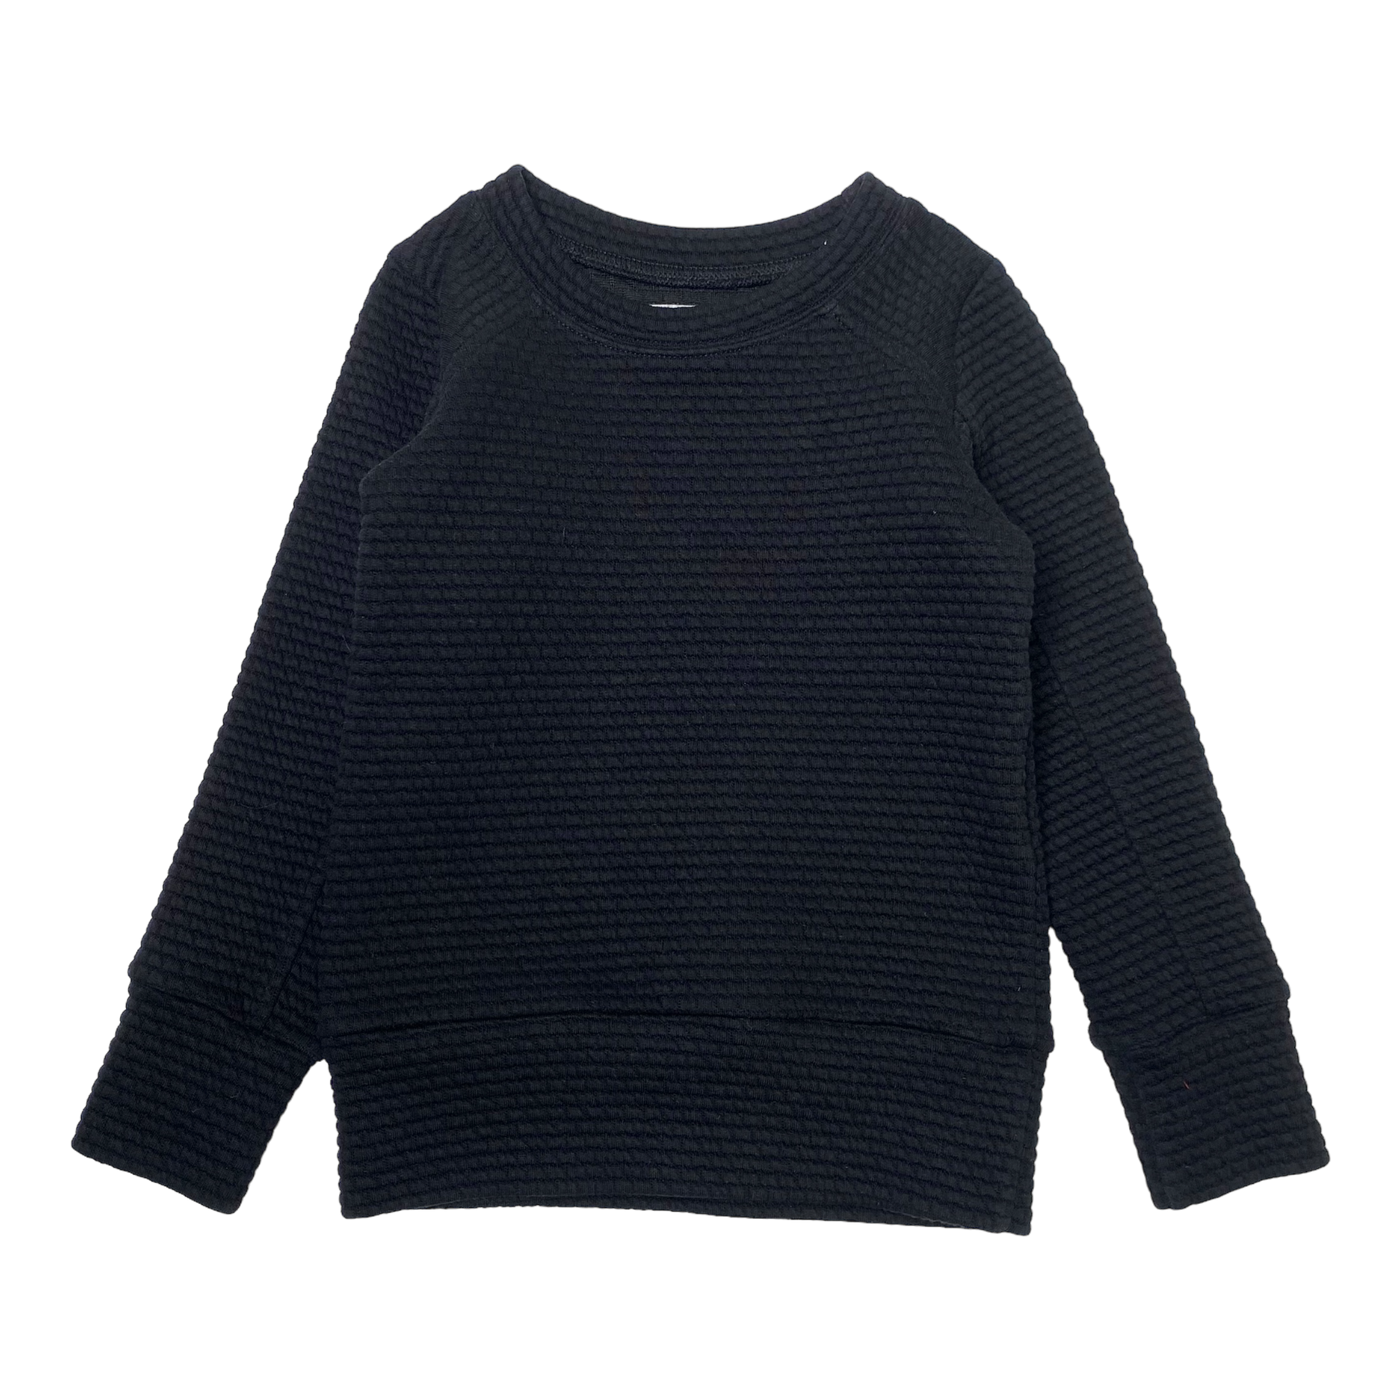 Gugguu sweatshirt, black | 92cm